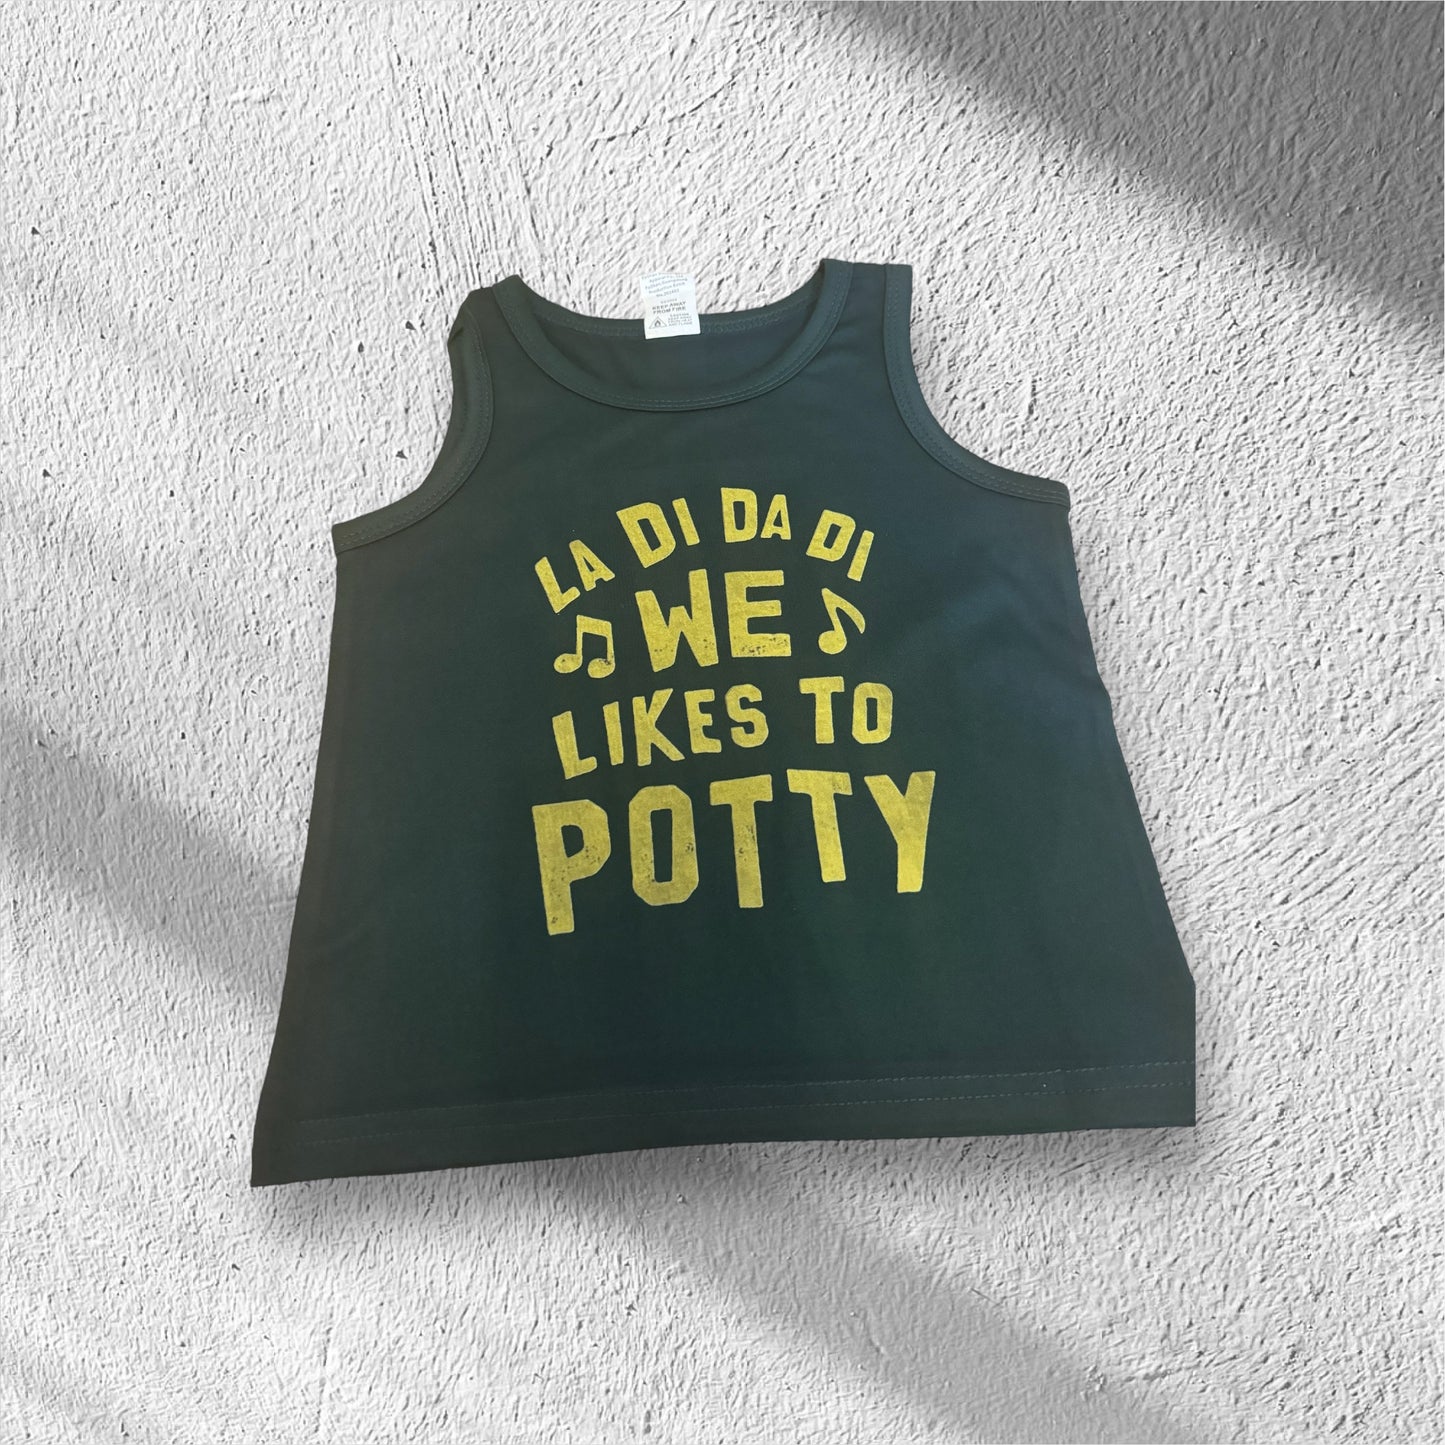 Funny potty sleeveless shirt